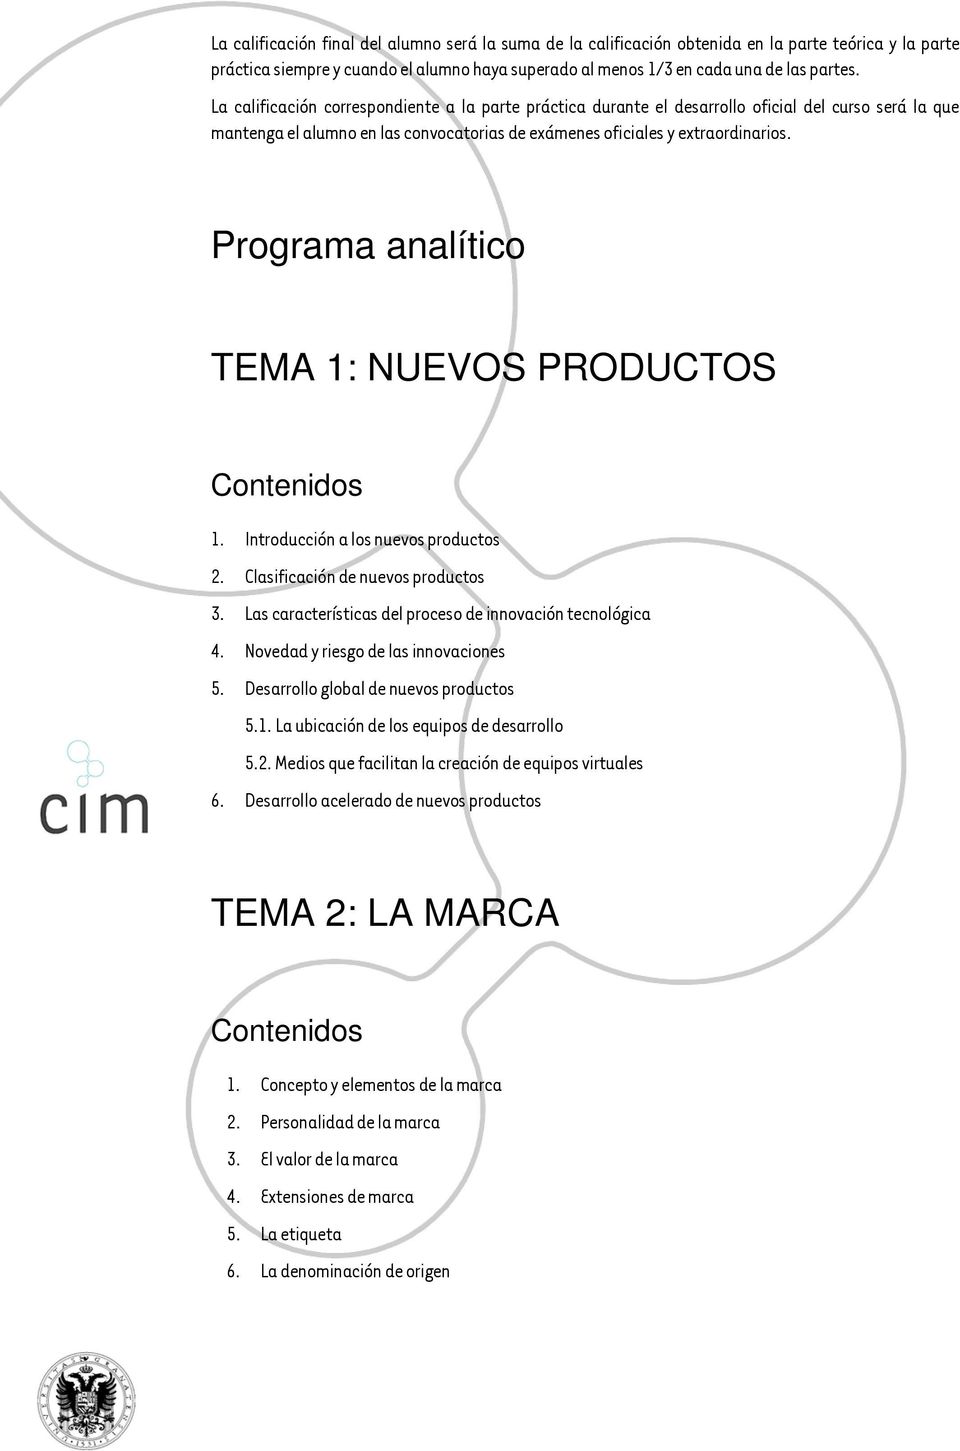 Programa analítico TEMA 1: NUEVOS PRODUCTOS 1. Introducción a los nuevos productos 2. Clasificación de nuevos productos 3. Las características del proceso de innovación tecnológica 4.